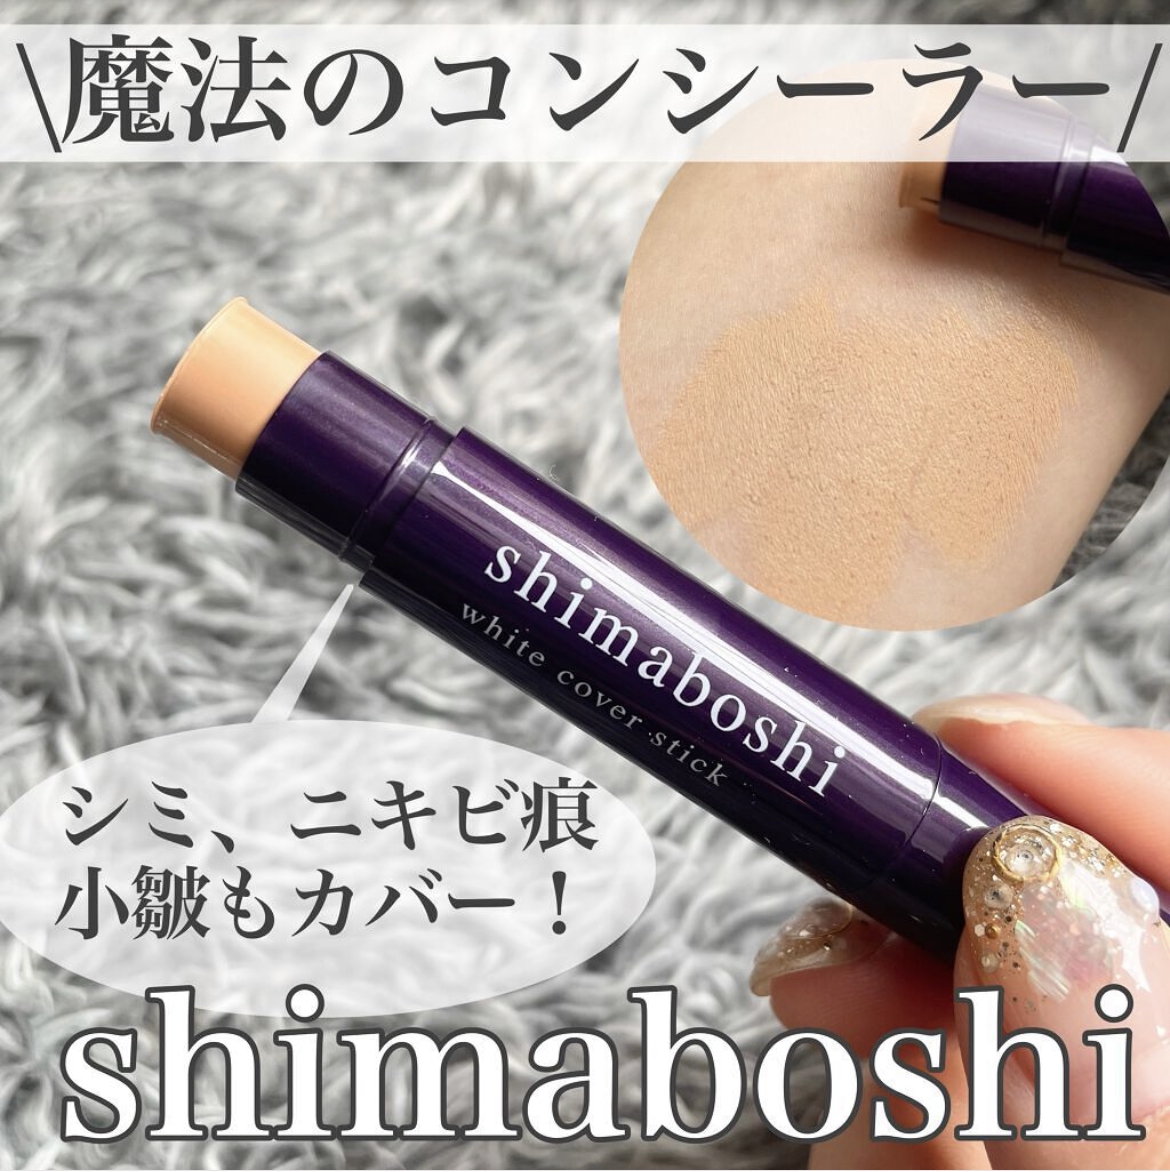 shimaboshi(シマボシ) ホワイトカバースティックの良い点・メリットに関するけいさんの口コミ画像1